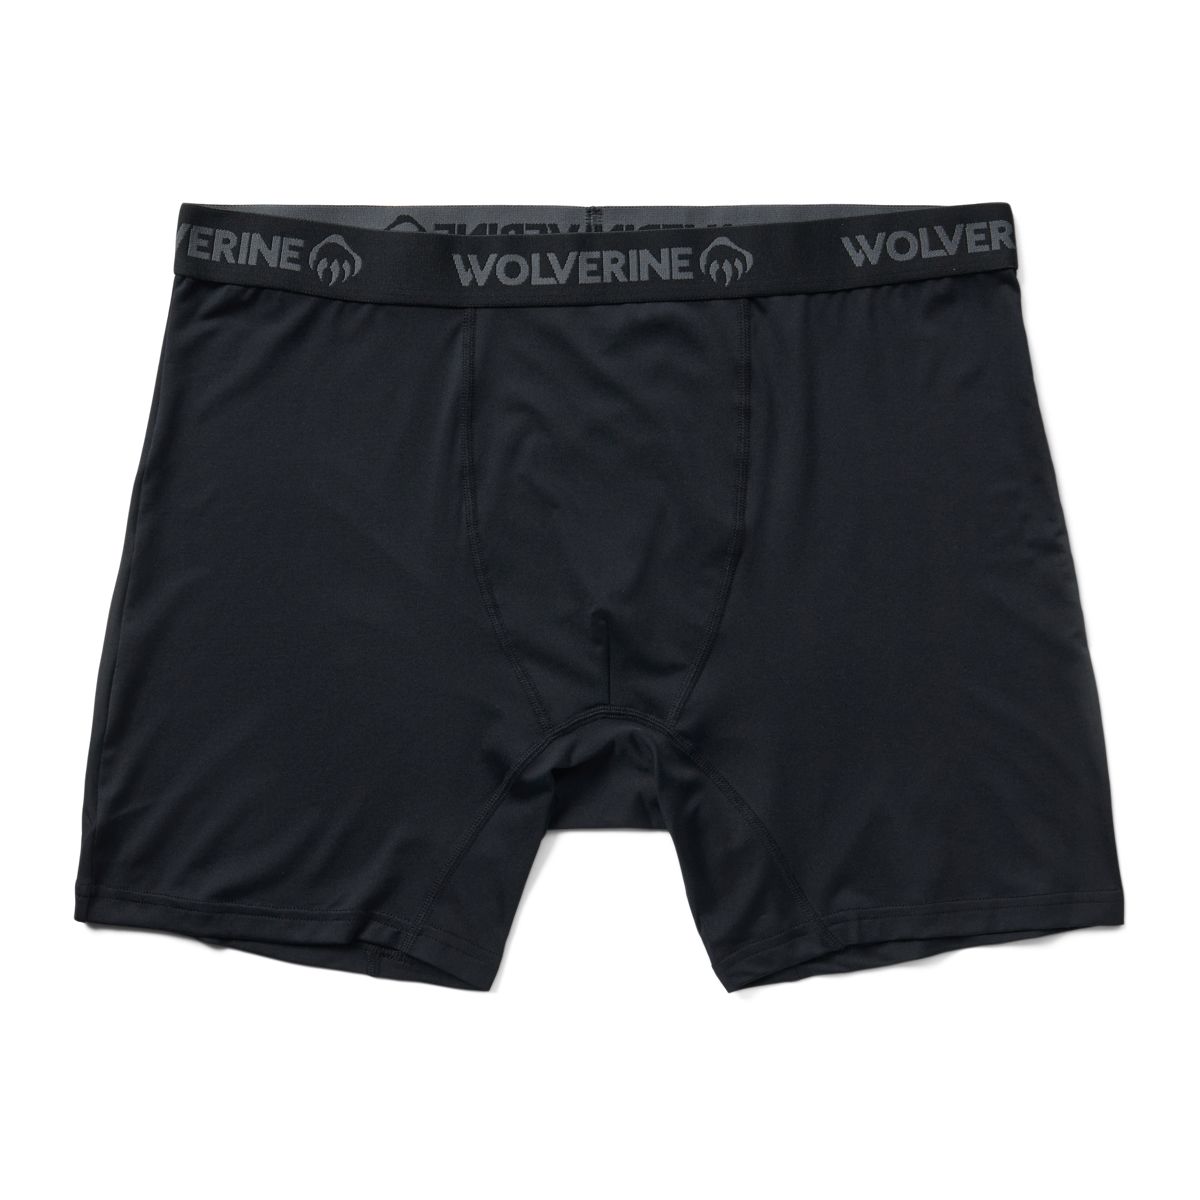  WOLVERINE Mens Underwear Multipacks Boxer Briefs Soft